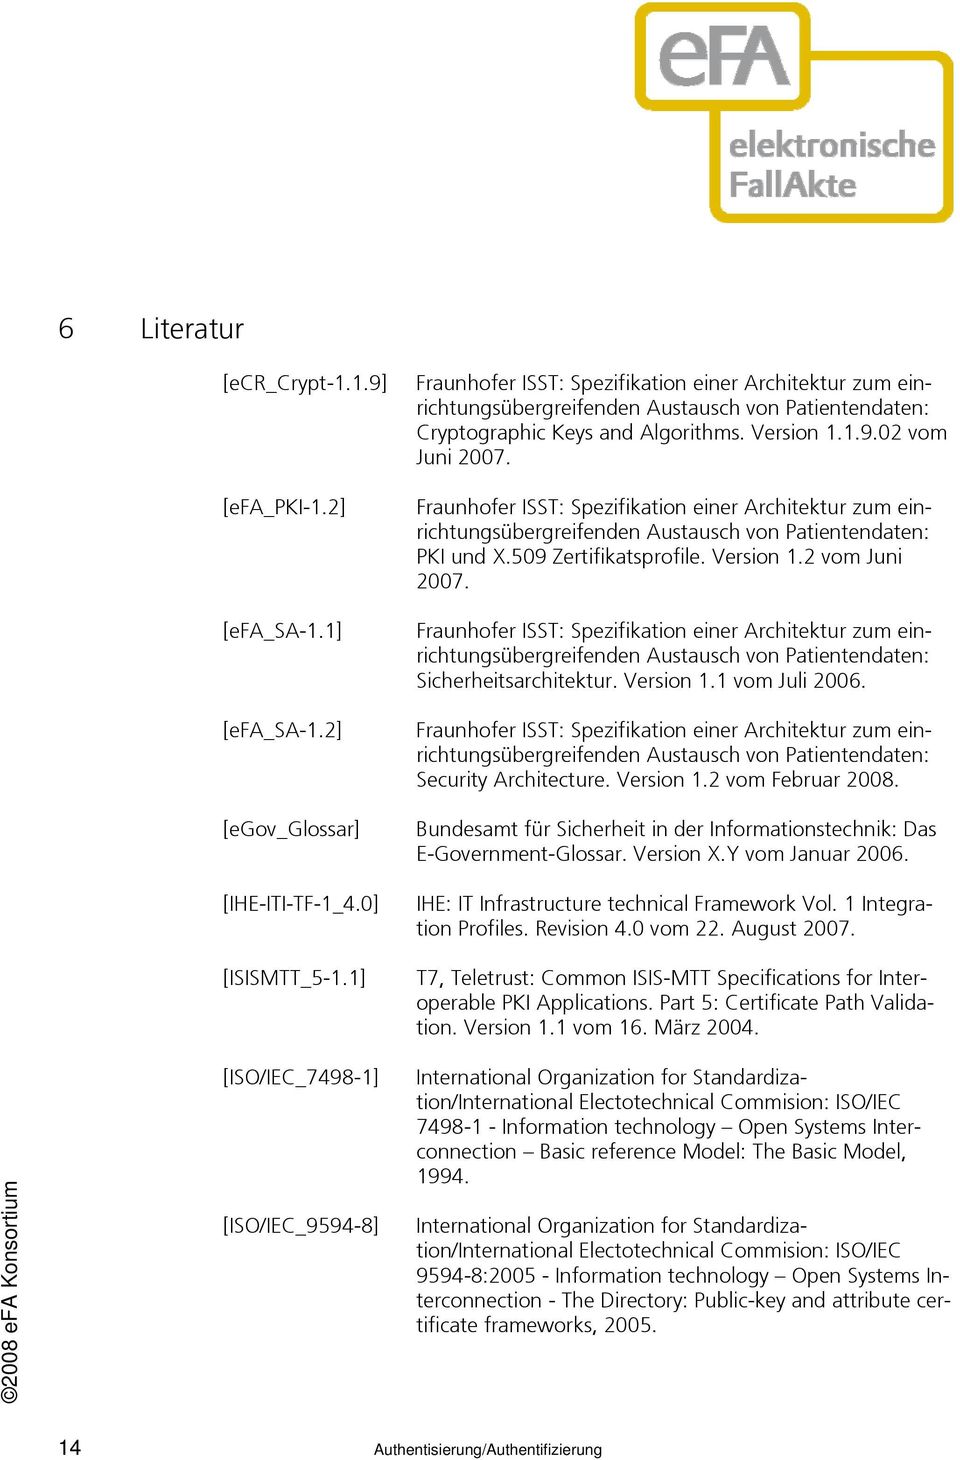 Fraunhofer ISST: Spezifikation einer Architektur zum einrichtungsübergreifenden Austausch von Patientendaten: PKI und X.509 Zertifikatsprofile. Version 1.2 vom Juni 2007.